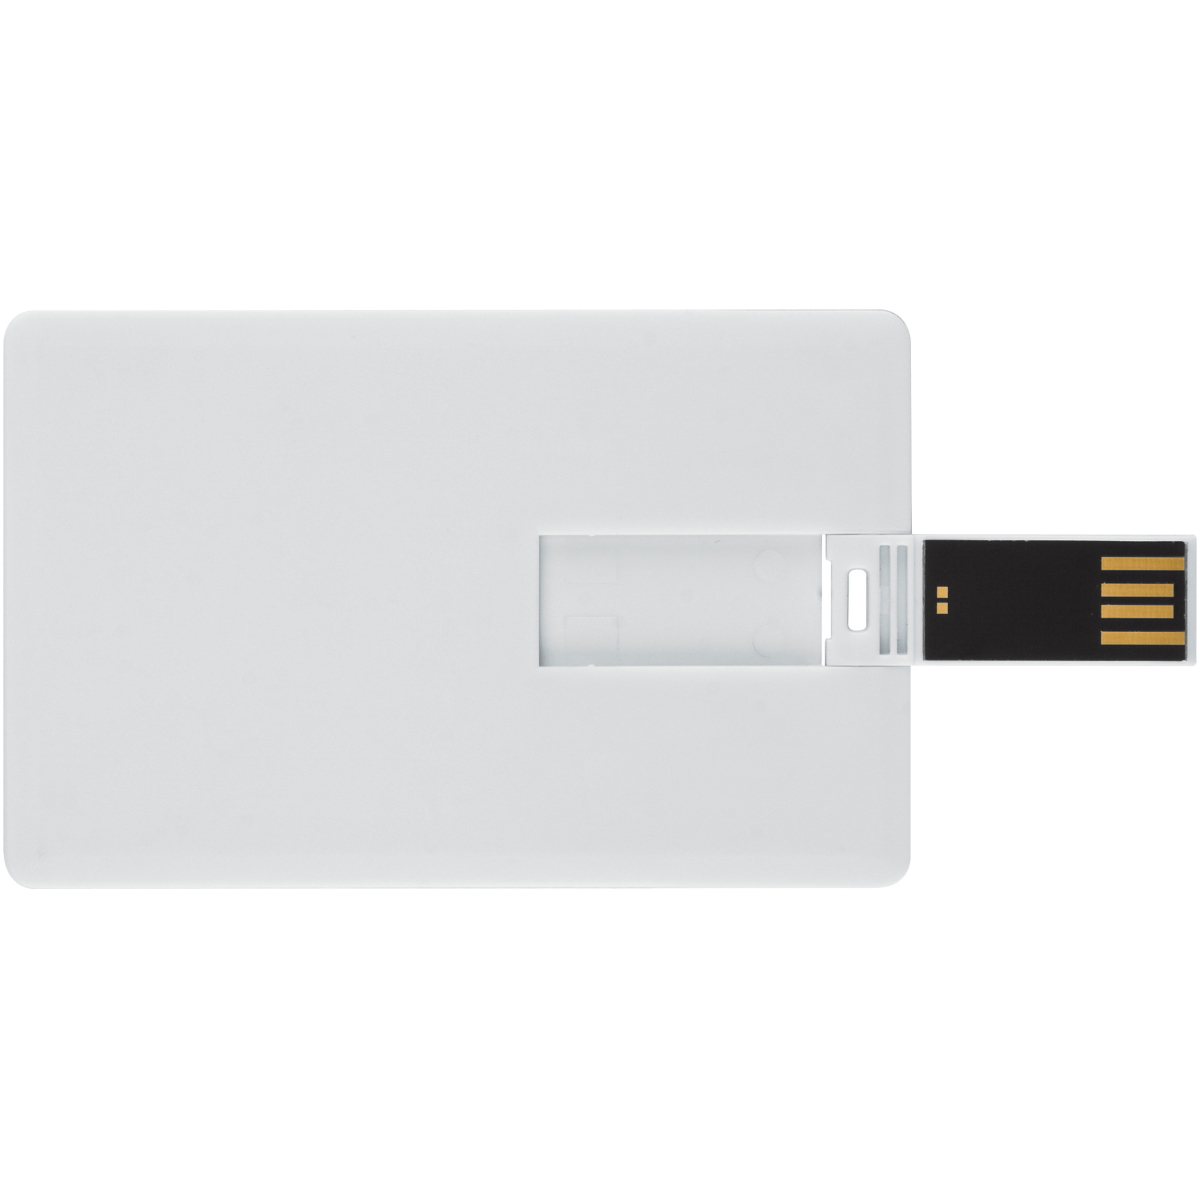 16 Kreditkarte ® USB GB) (Weiss, GERMANY USB-Stick